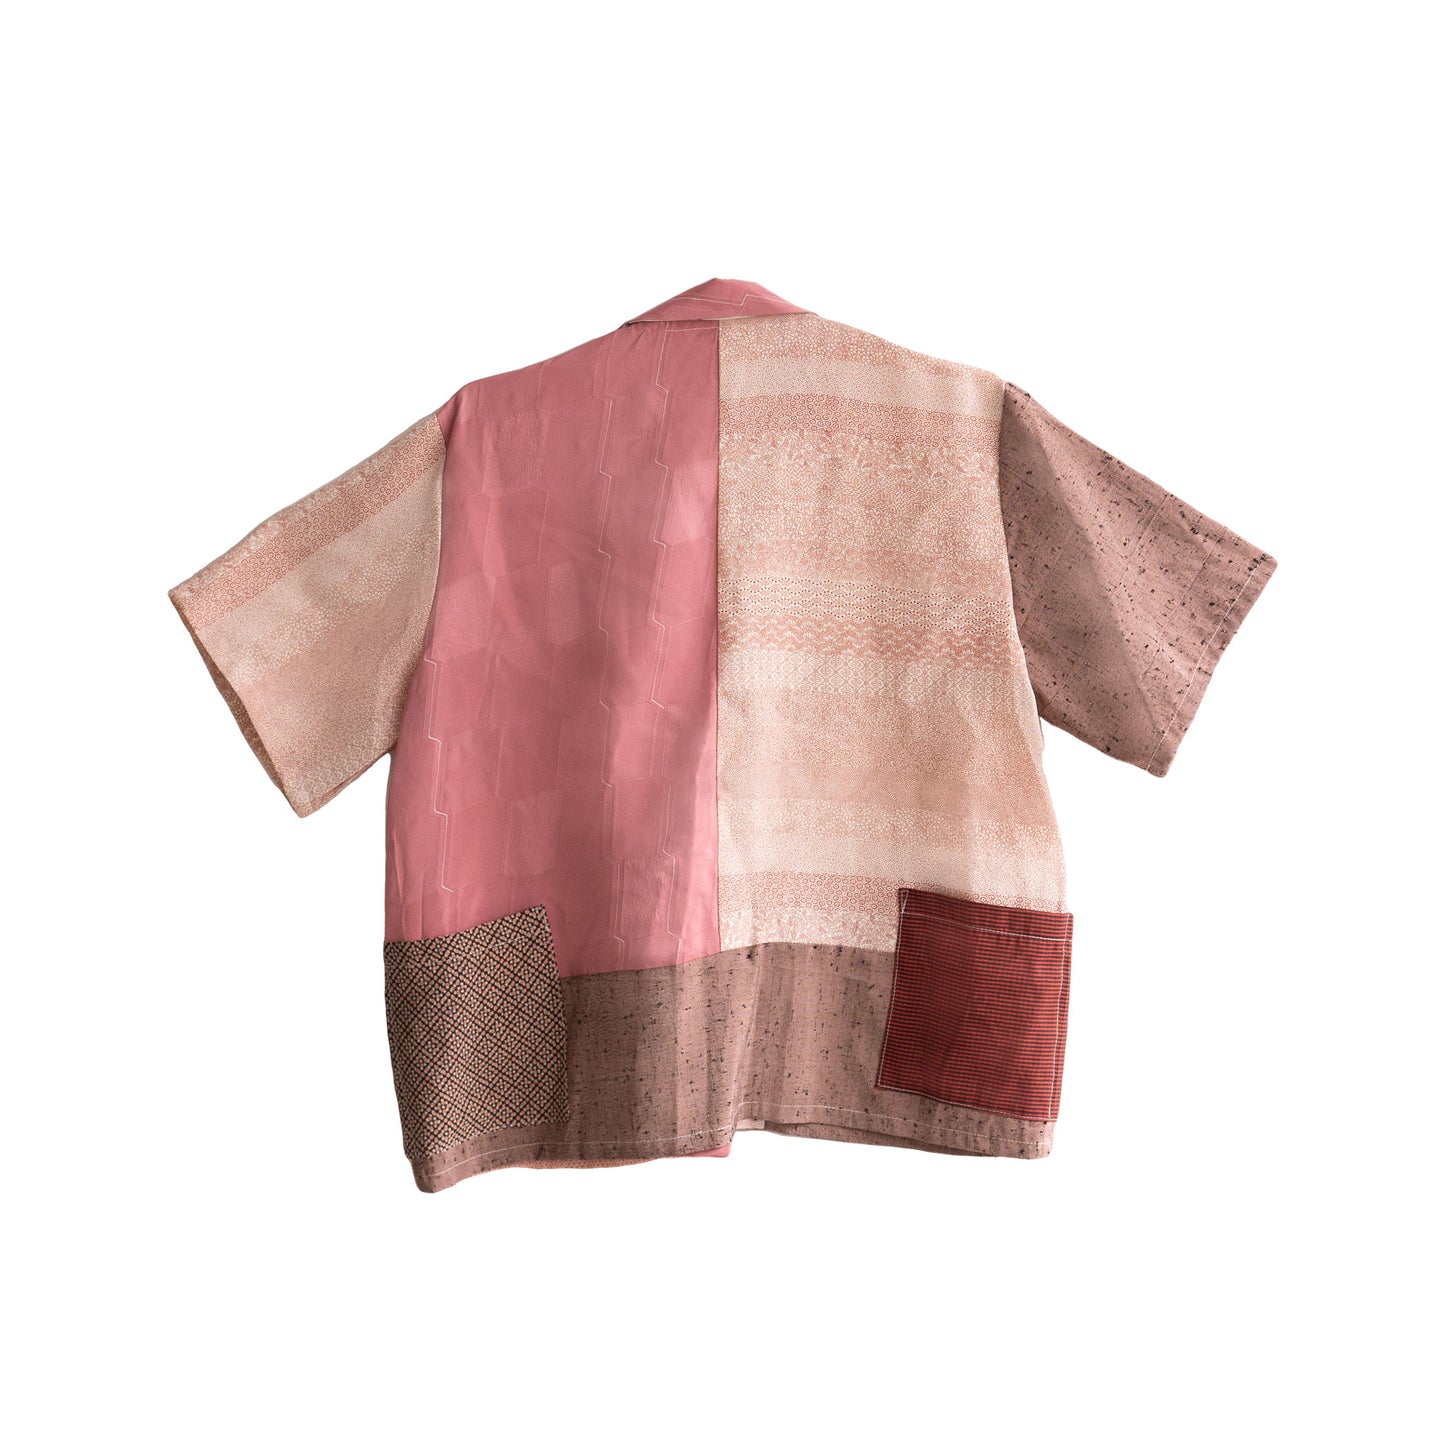 Kimono Working Shirts - Pink 01 M